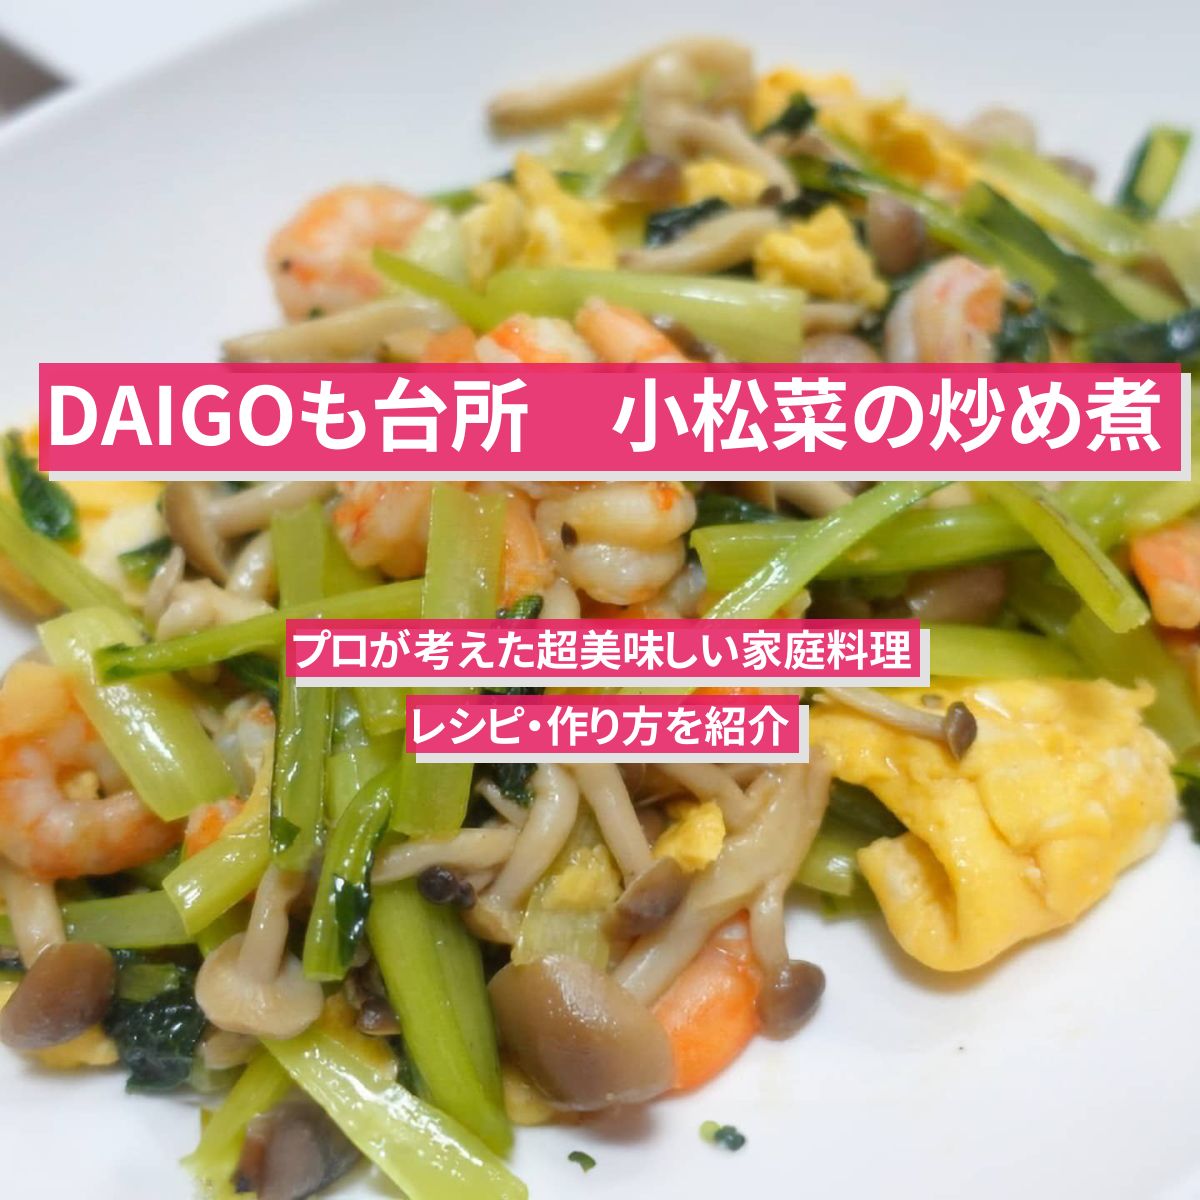 【DAIGOも台所】『小松菜の炒め煮』のレシピ・作り方を紹介